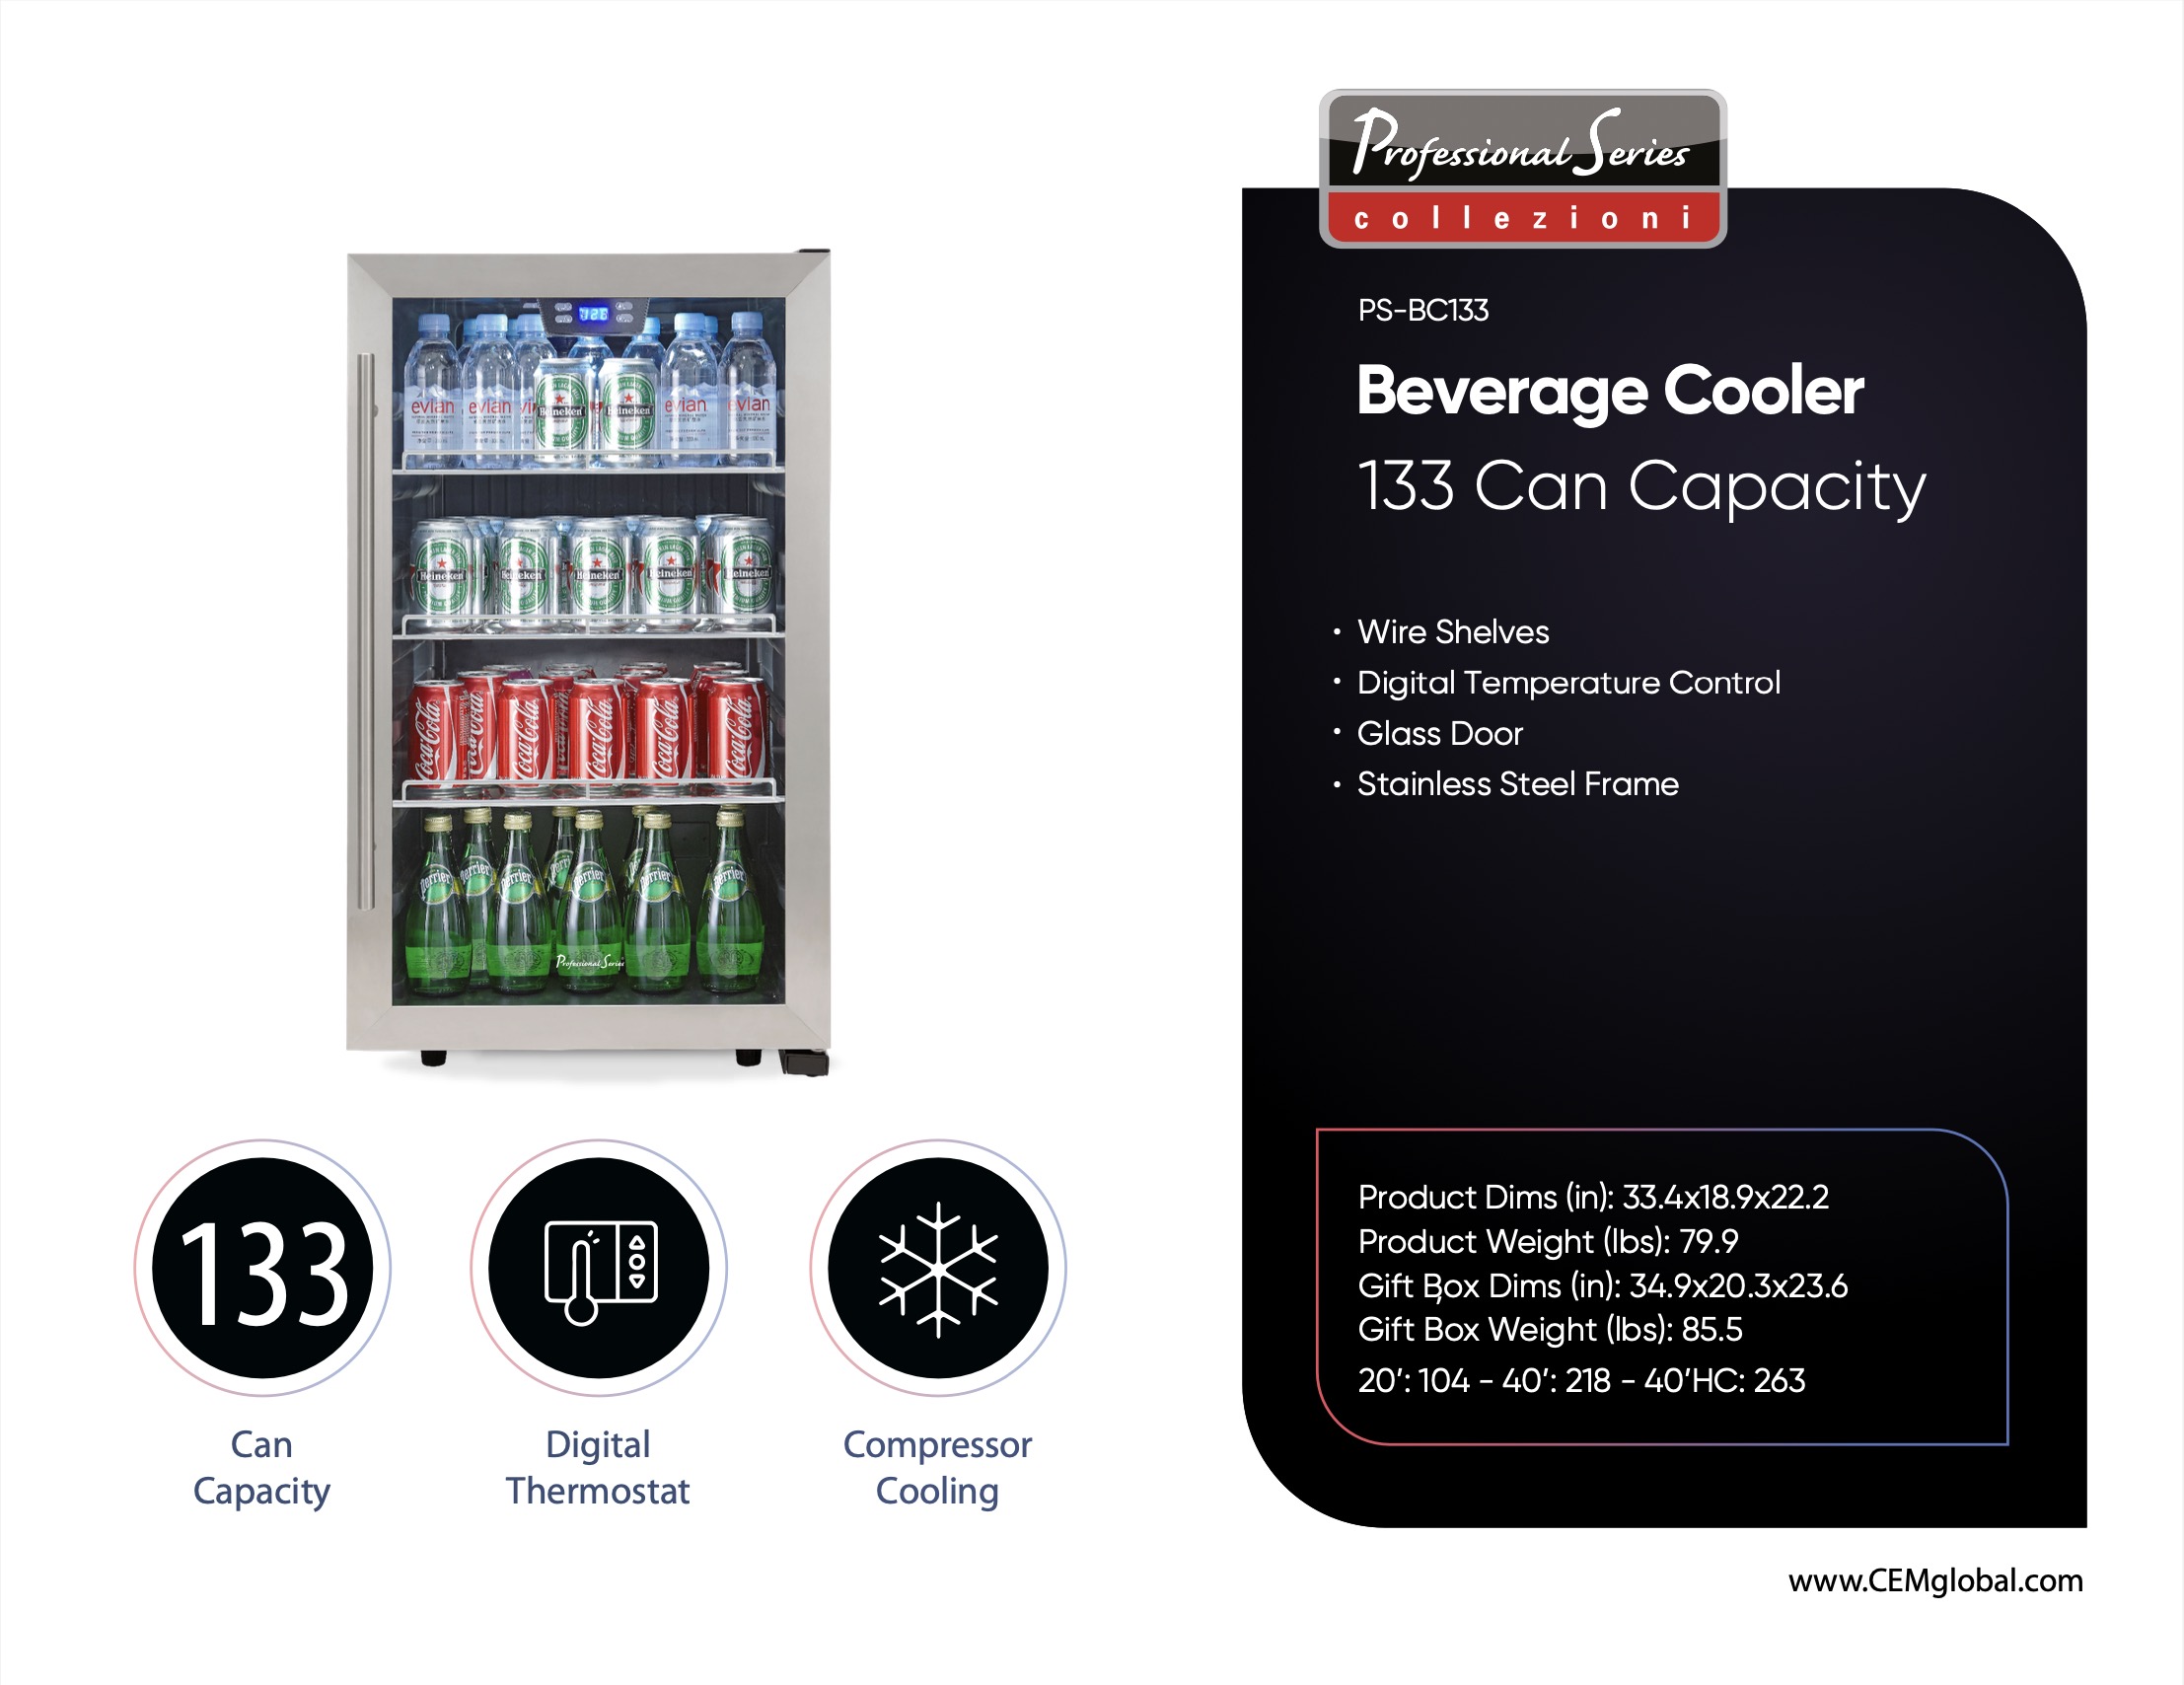 Beverage Cooler 133 Can